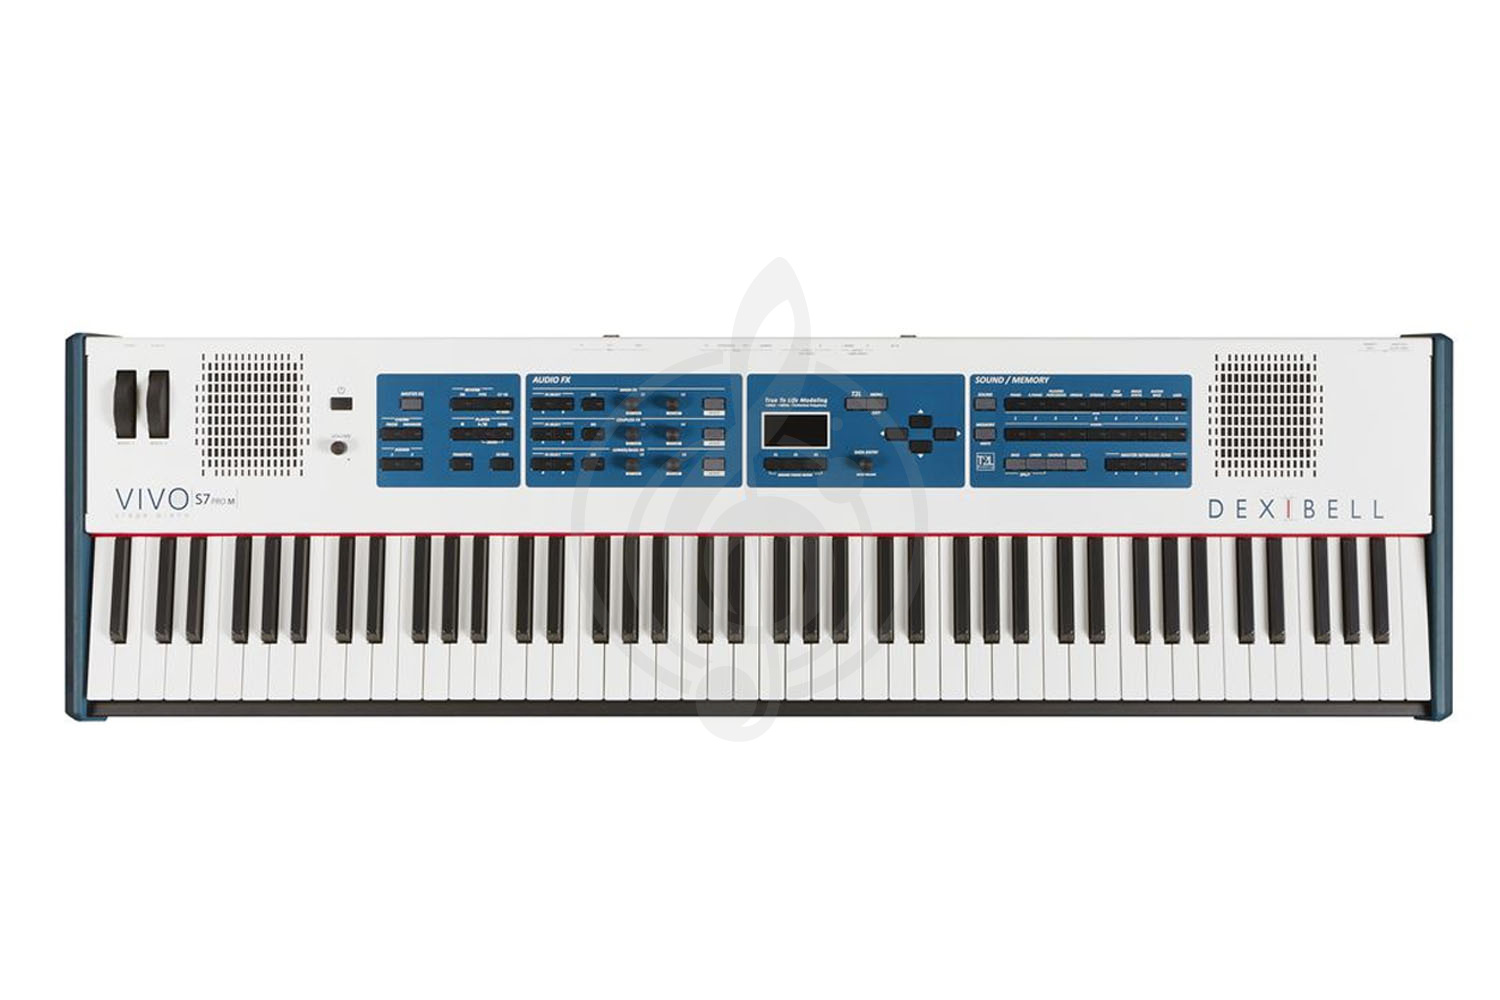 Цифровое пианино Цифровые пианино DEXIBELL Dexibell VIVO S7 Pro M - Цифровое пианино VIVO S7 Pro M - фото 1